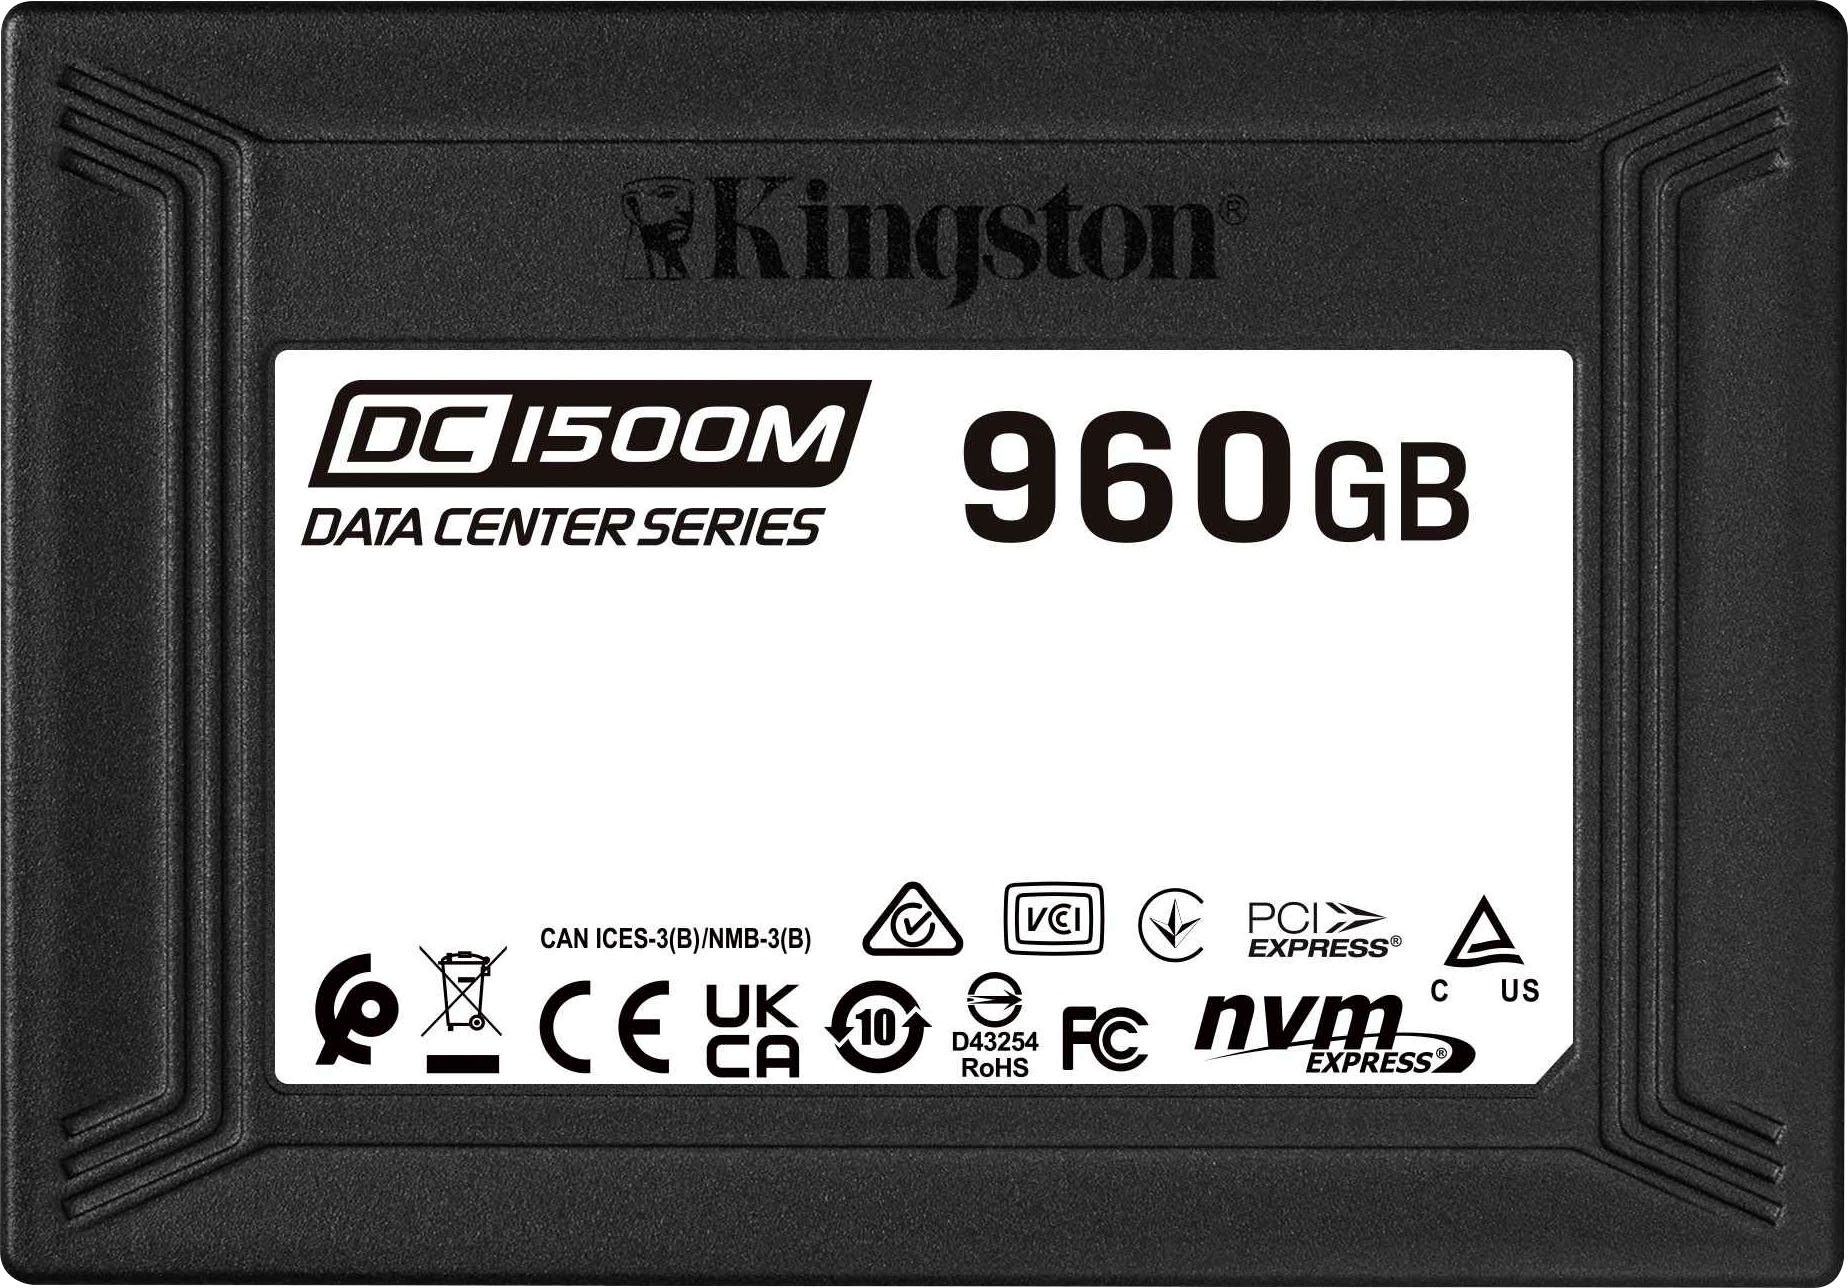 Kingston Interne SSD »DC1500M U.2 ENTERPRISE-SS...